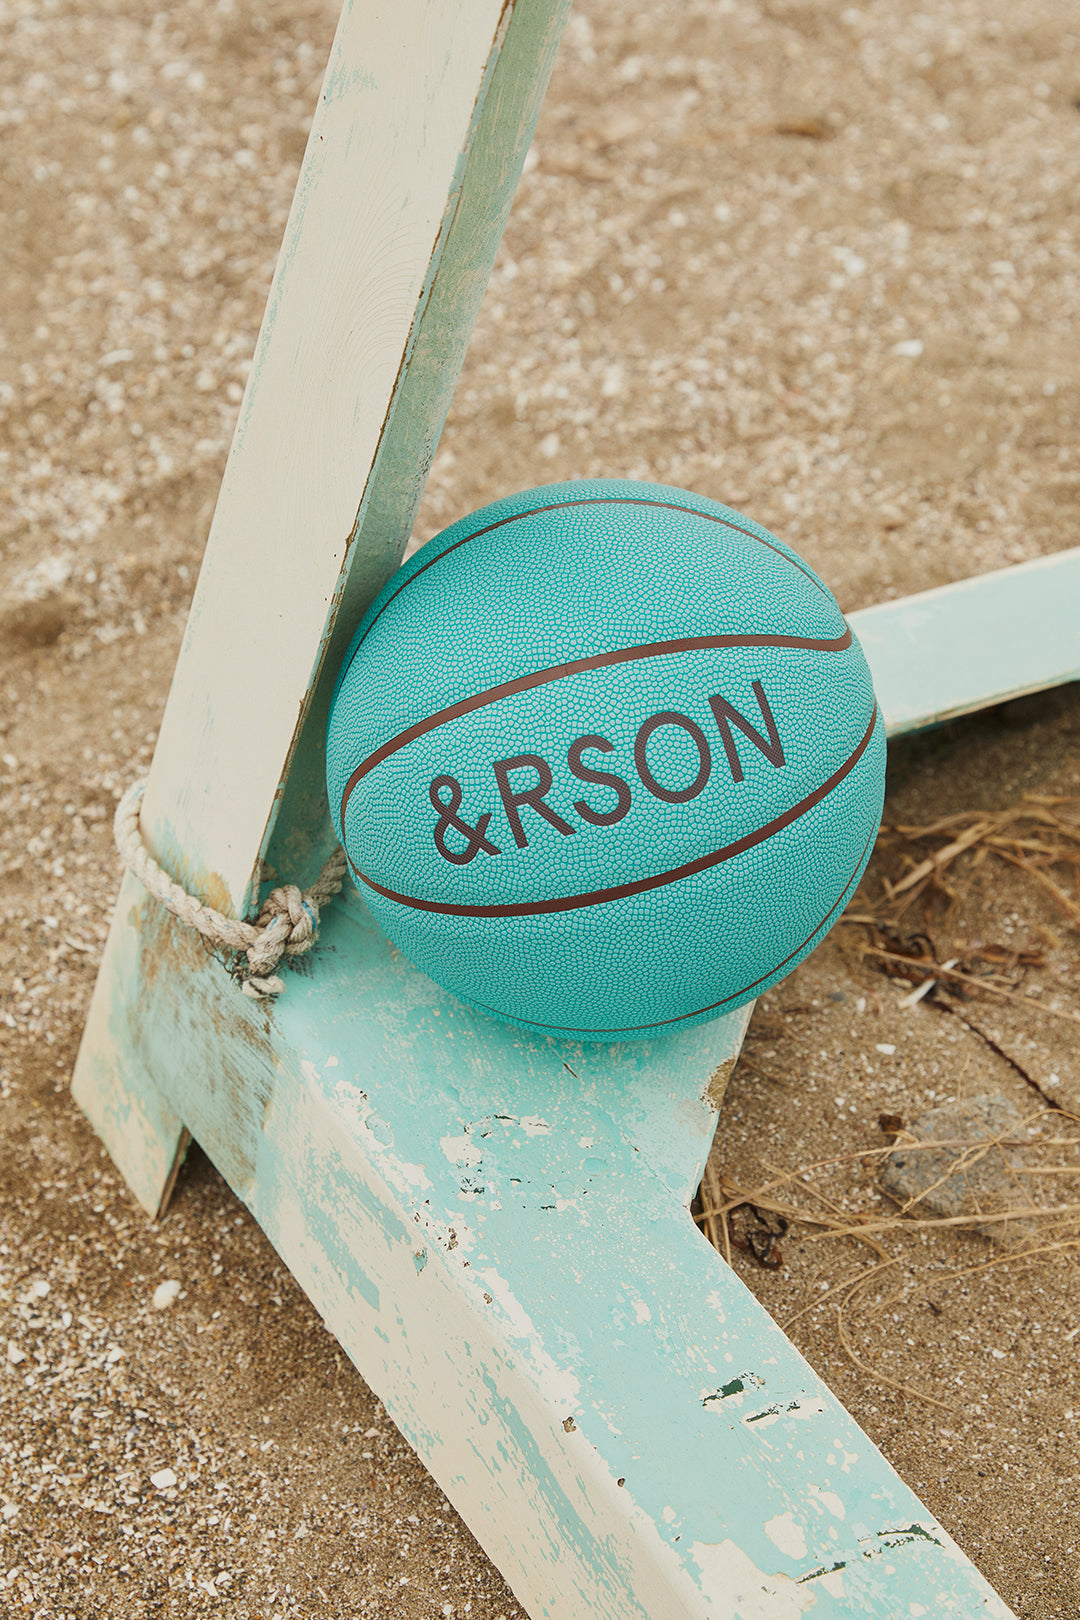 &RSON BASKETBALL MARINE BLUE | &RSON